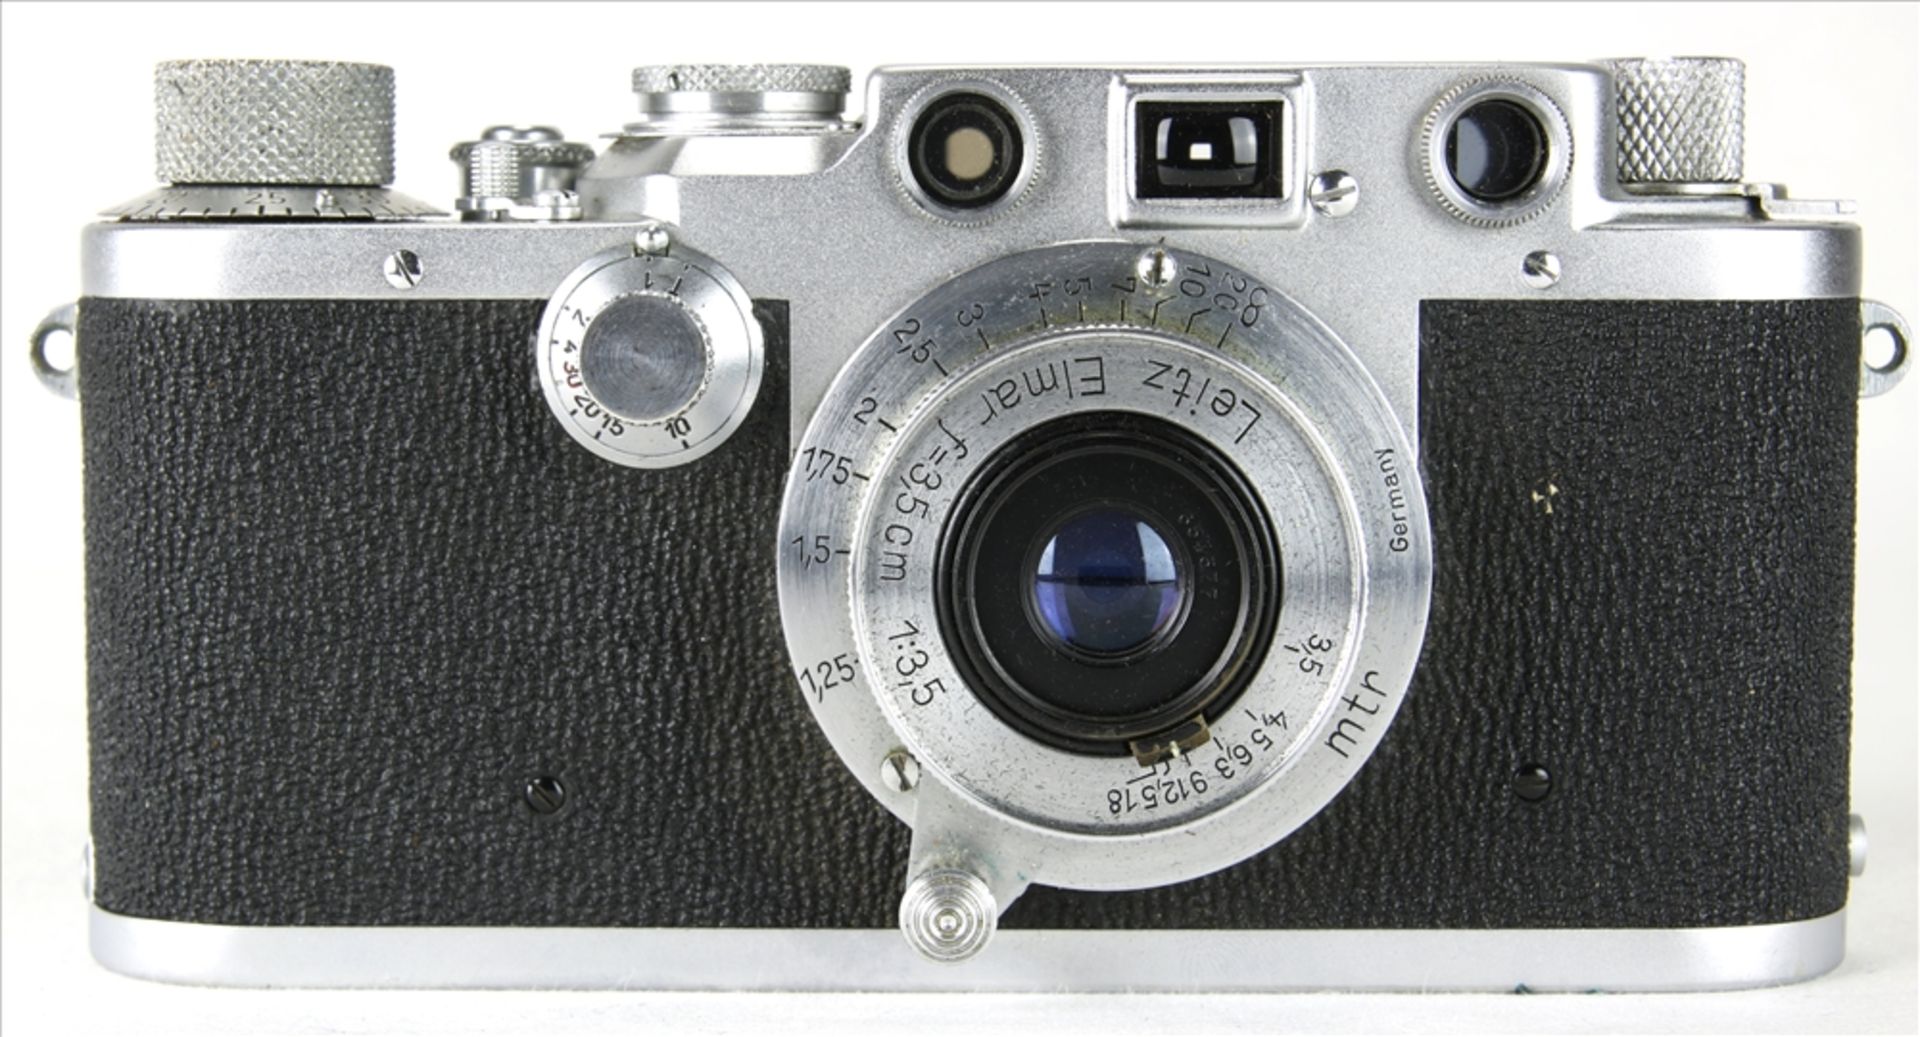 Leica III f vintage Kamera Ernst Leitz GmbH Wetzlar 1946/47. Nummer 438948. Elmar f=3,5, 1:3,5 - Bild 2 aus 6